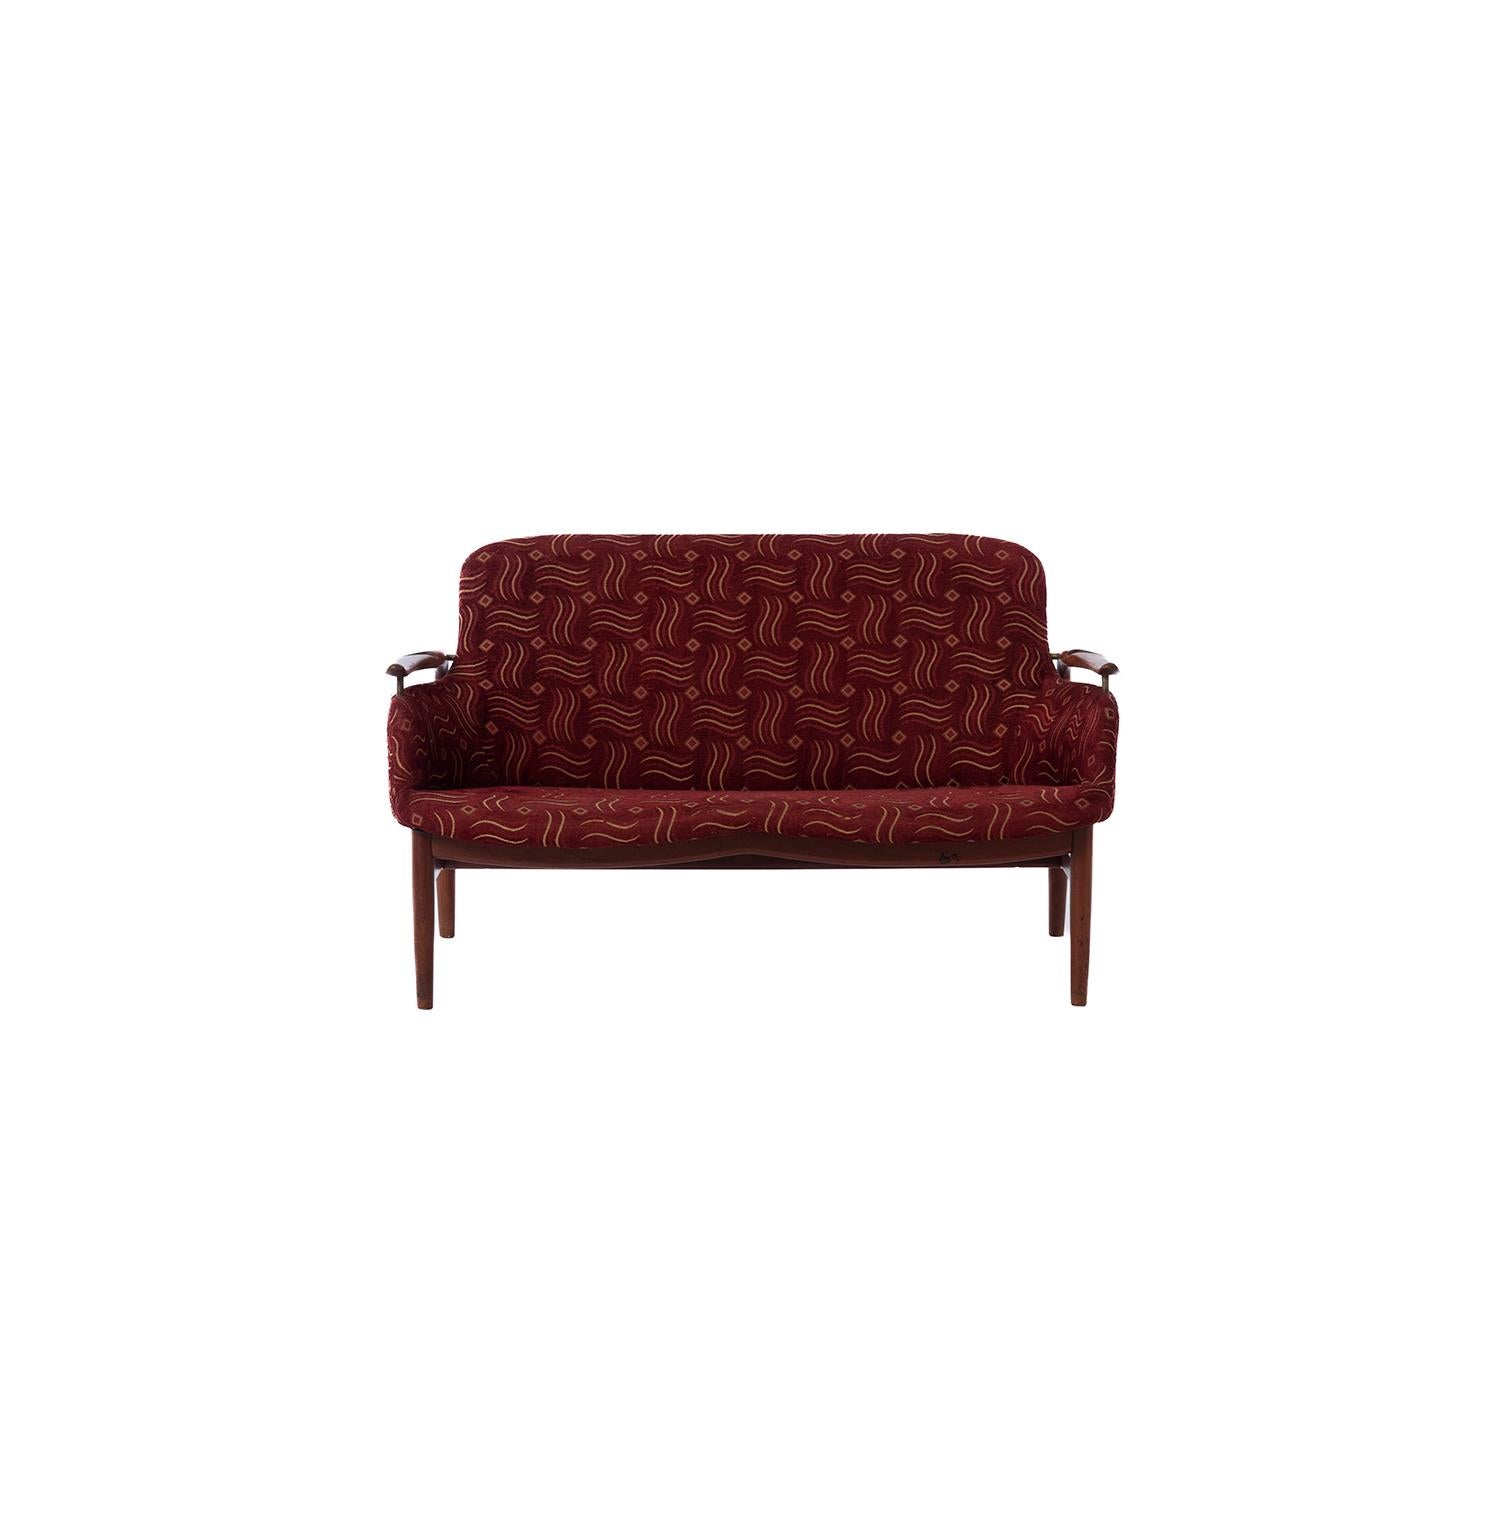 Ein seltenes, von Finn Juhl entworfenes Sofa, das vom Tischlermeister Niels Vodder unter der Bezeichnung NV53 hergestellt wurde. Gestell aus Teakholz mit gepolstertem Sitz. Rahmen mit Niels Vodder-Logo gestempelt. 


Die professionelle und